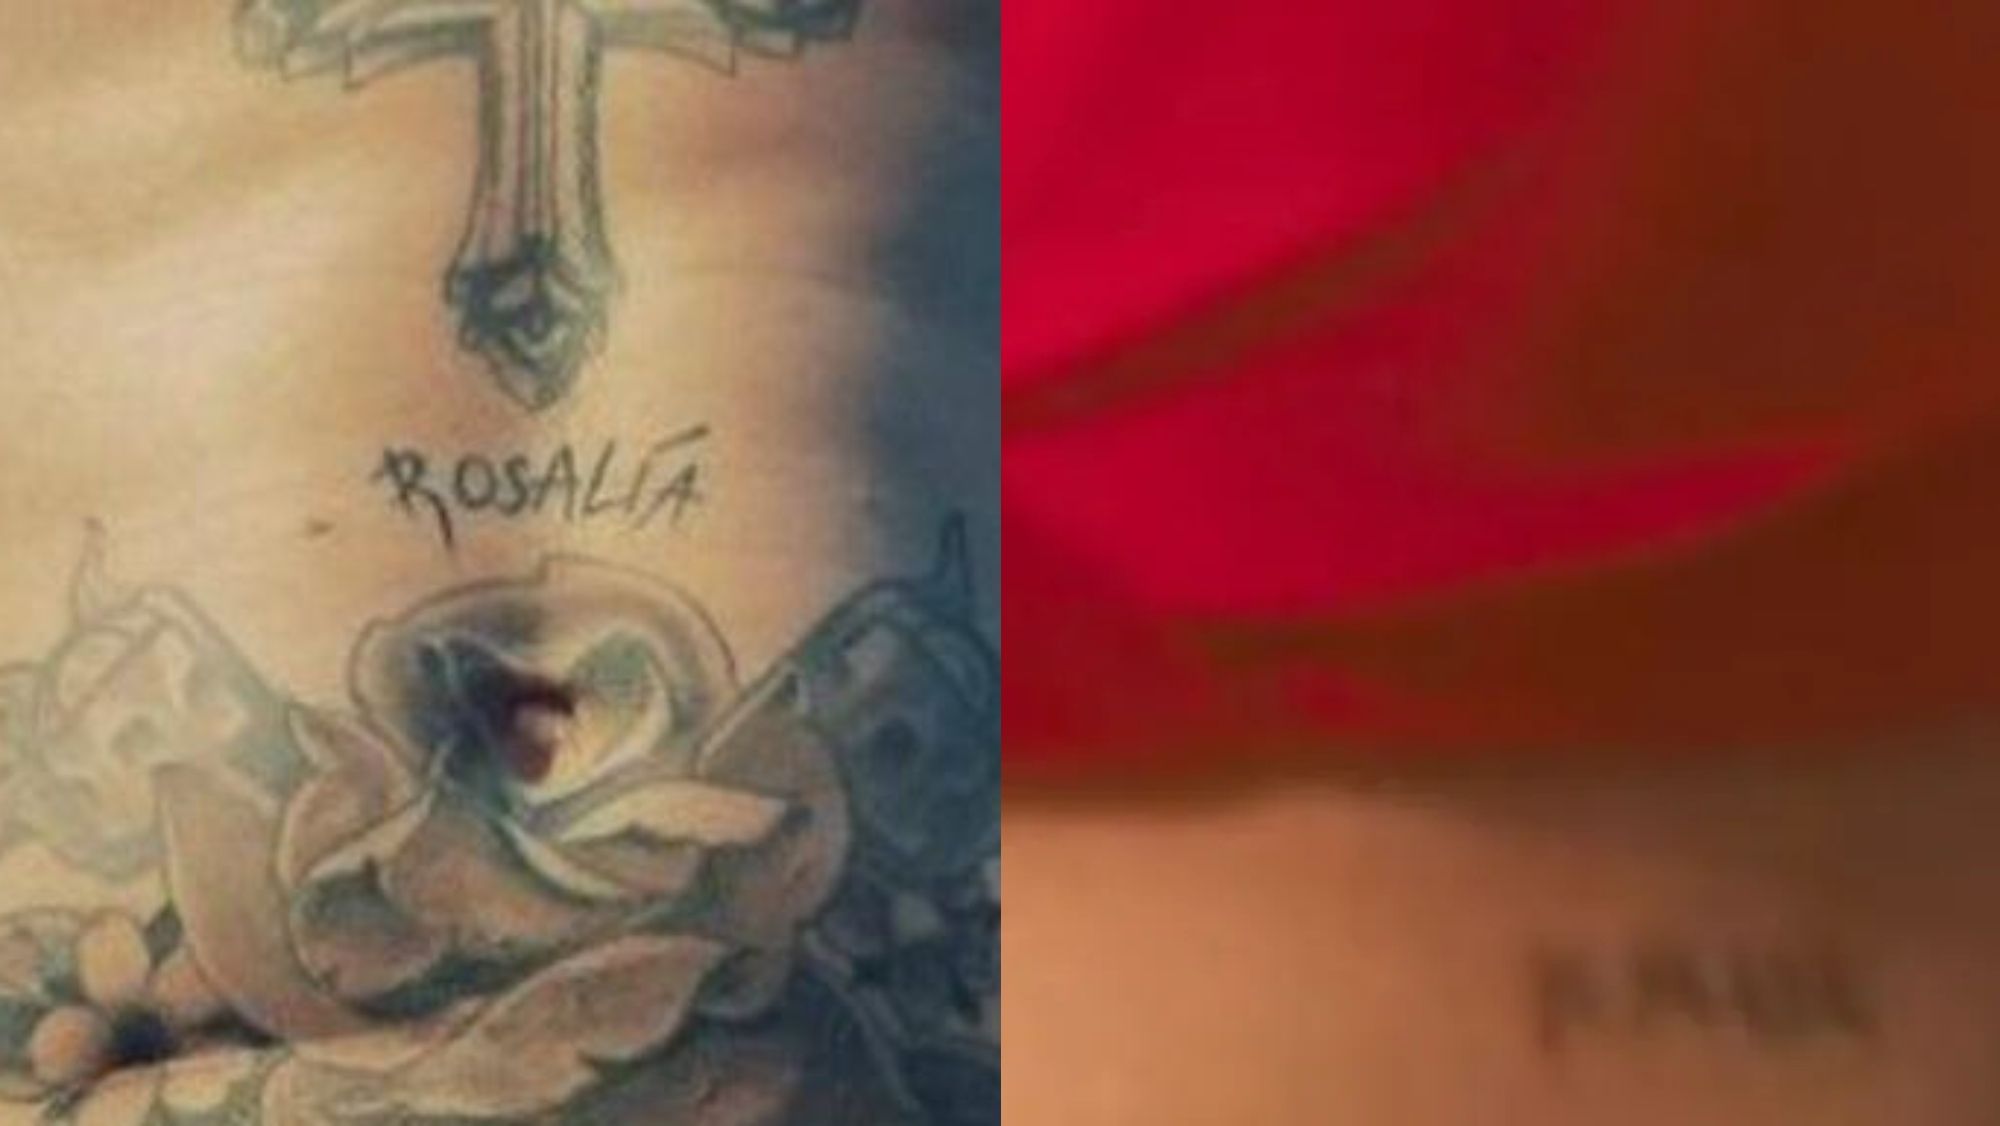 Los tatuajes de Rosalía y Rauw Alejandro